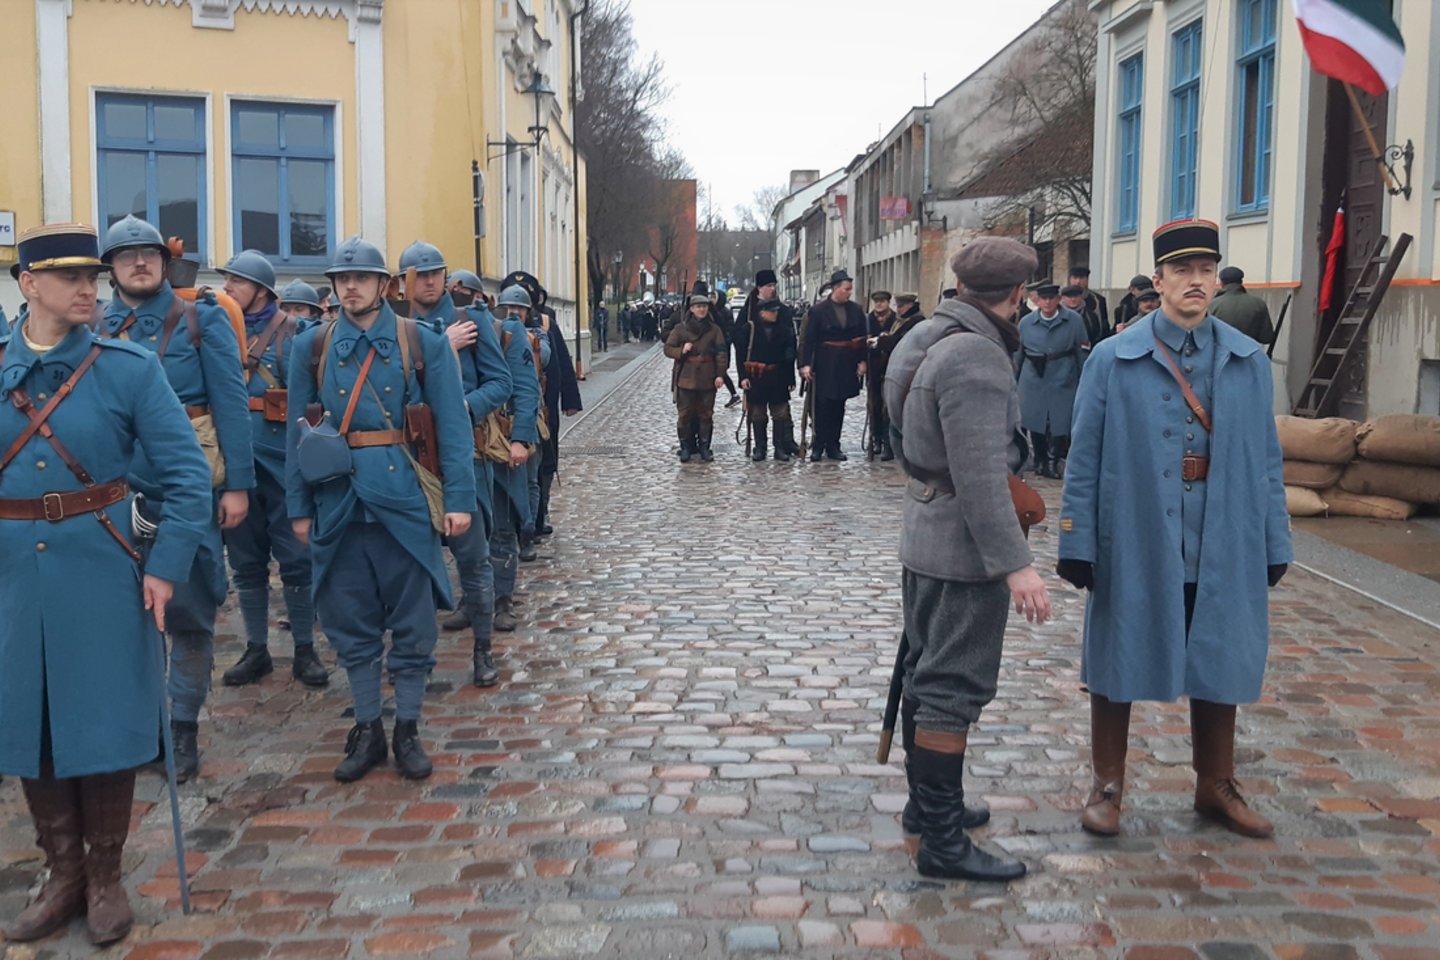  Lietuviai užėmė Klaipėdos krašto prefekto būstinę. <br> G.Pilaičio nuotr.